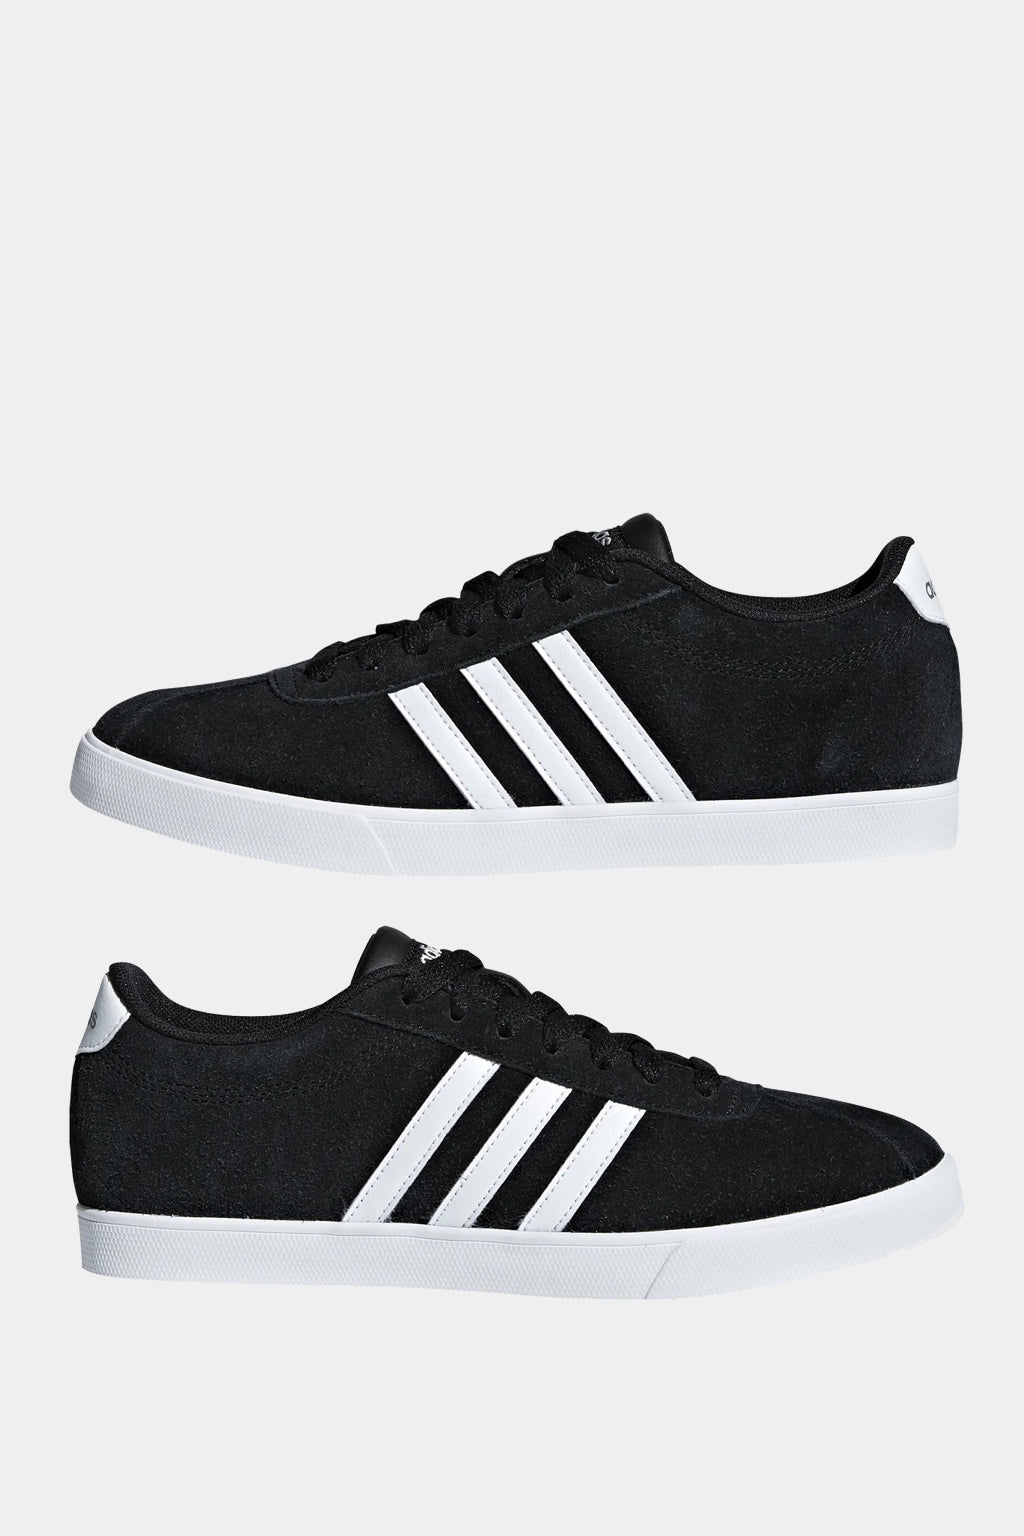 Adidas - Courtset Shoes